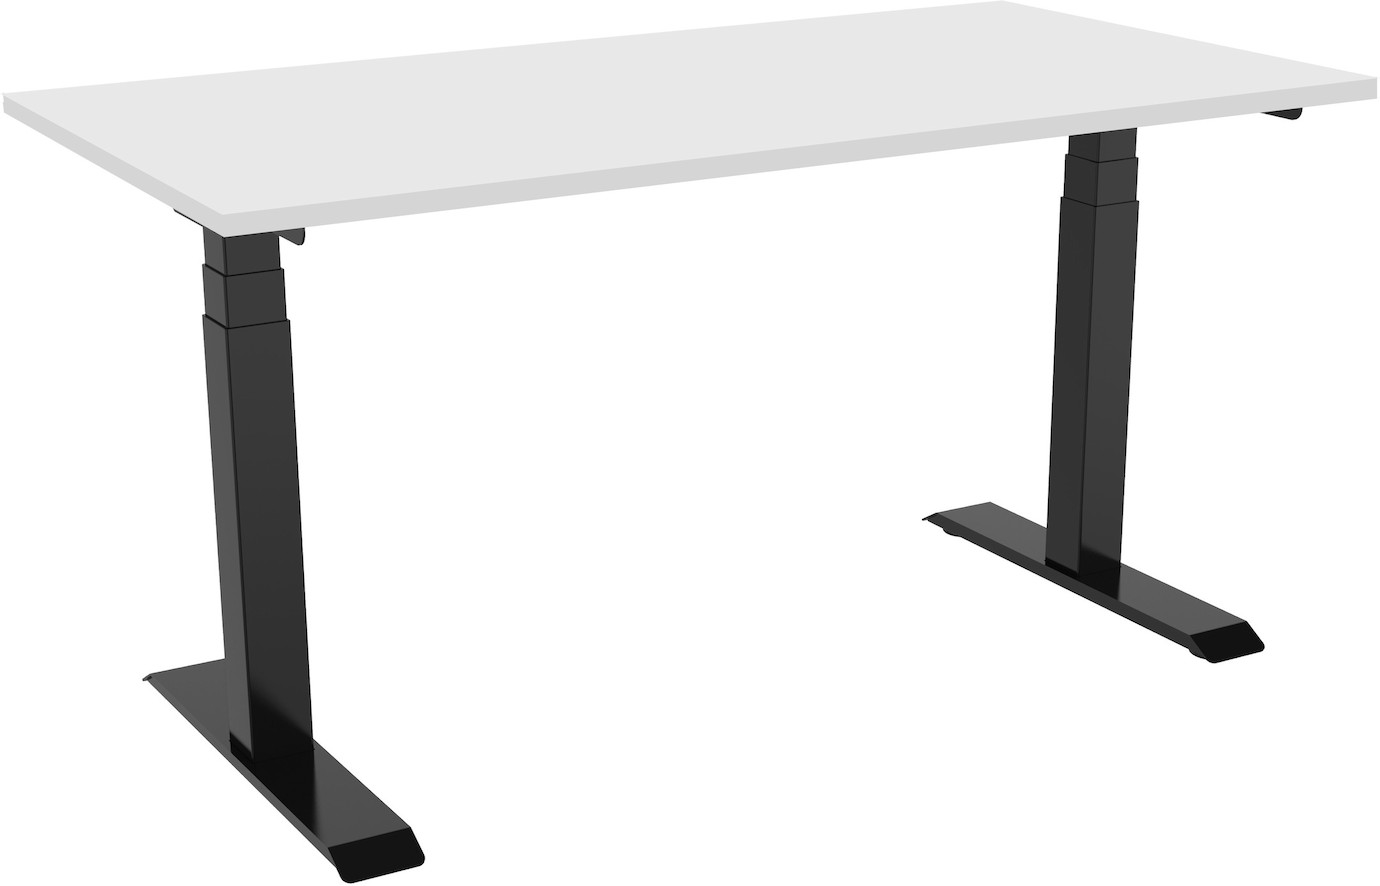 Vorschau: celexon höhenverstellbarer Schreibtisch Pro eAdjust-58123 - schwarz, inkl. Tischplatte 125 x 75 cm